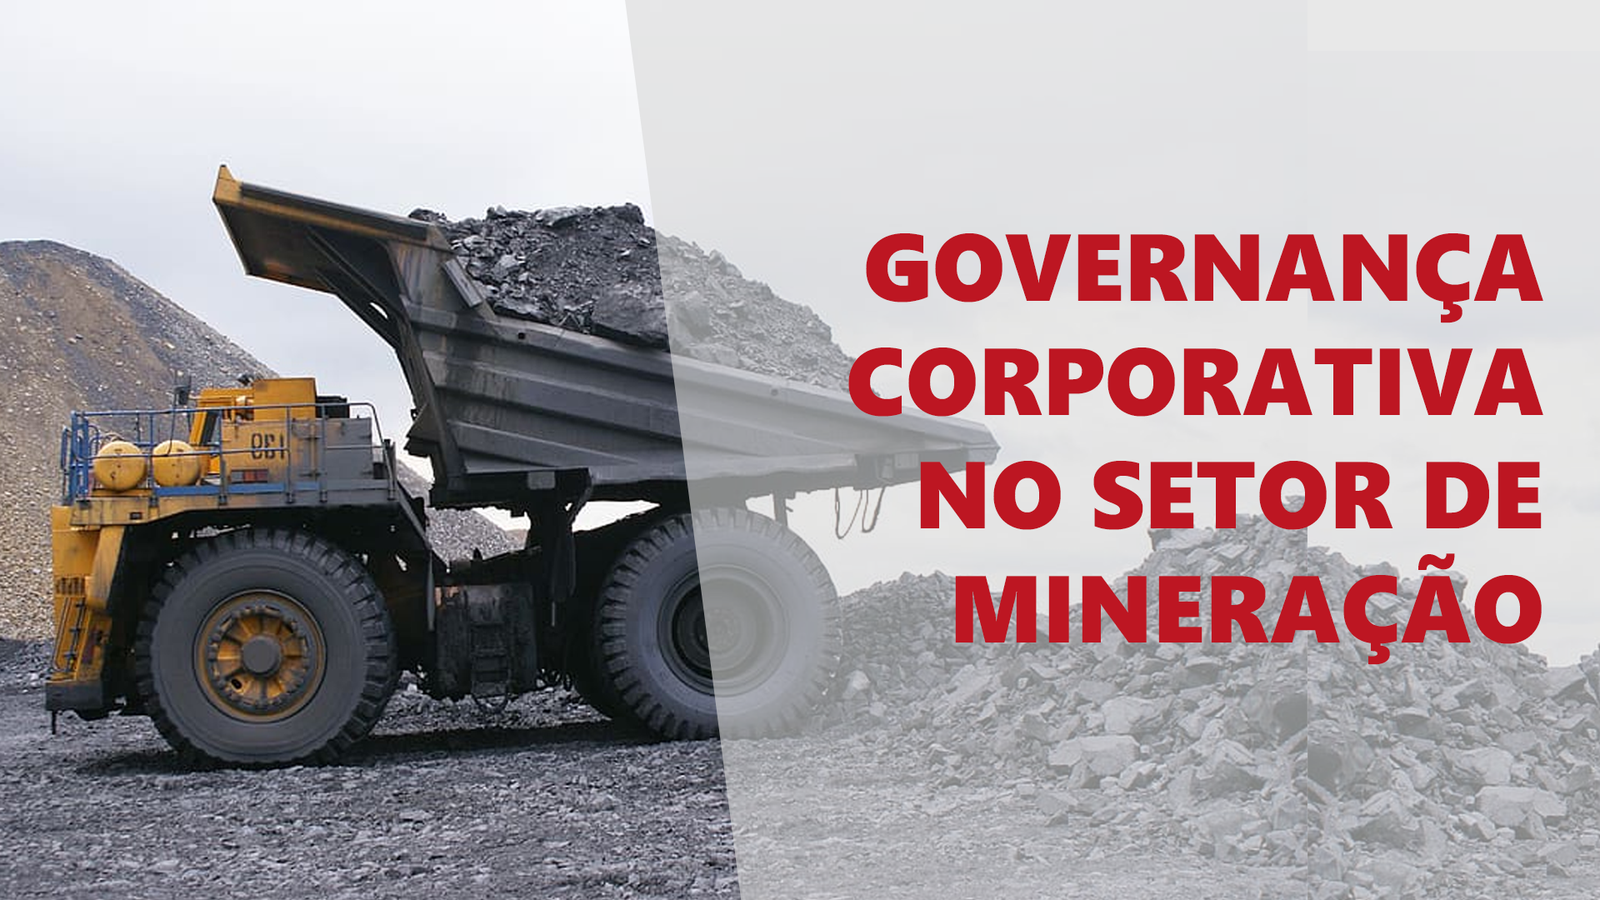 Série de vídeos aborda a Governança Corporativa no setor de mineração